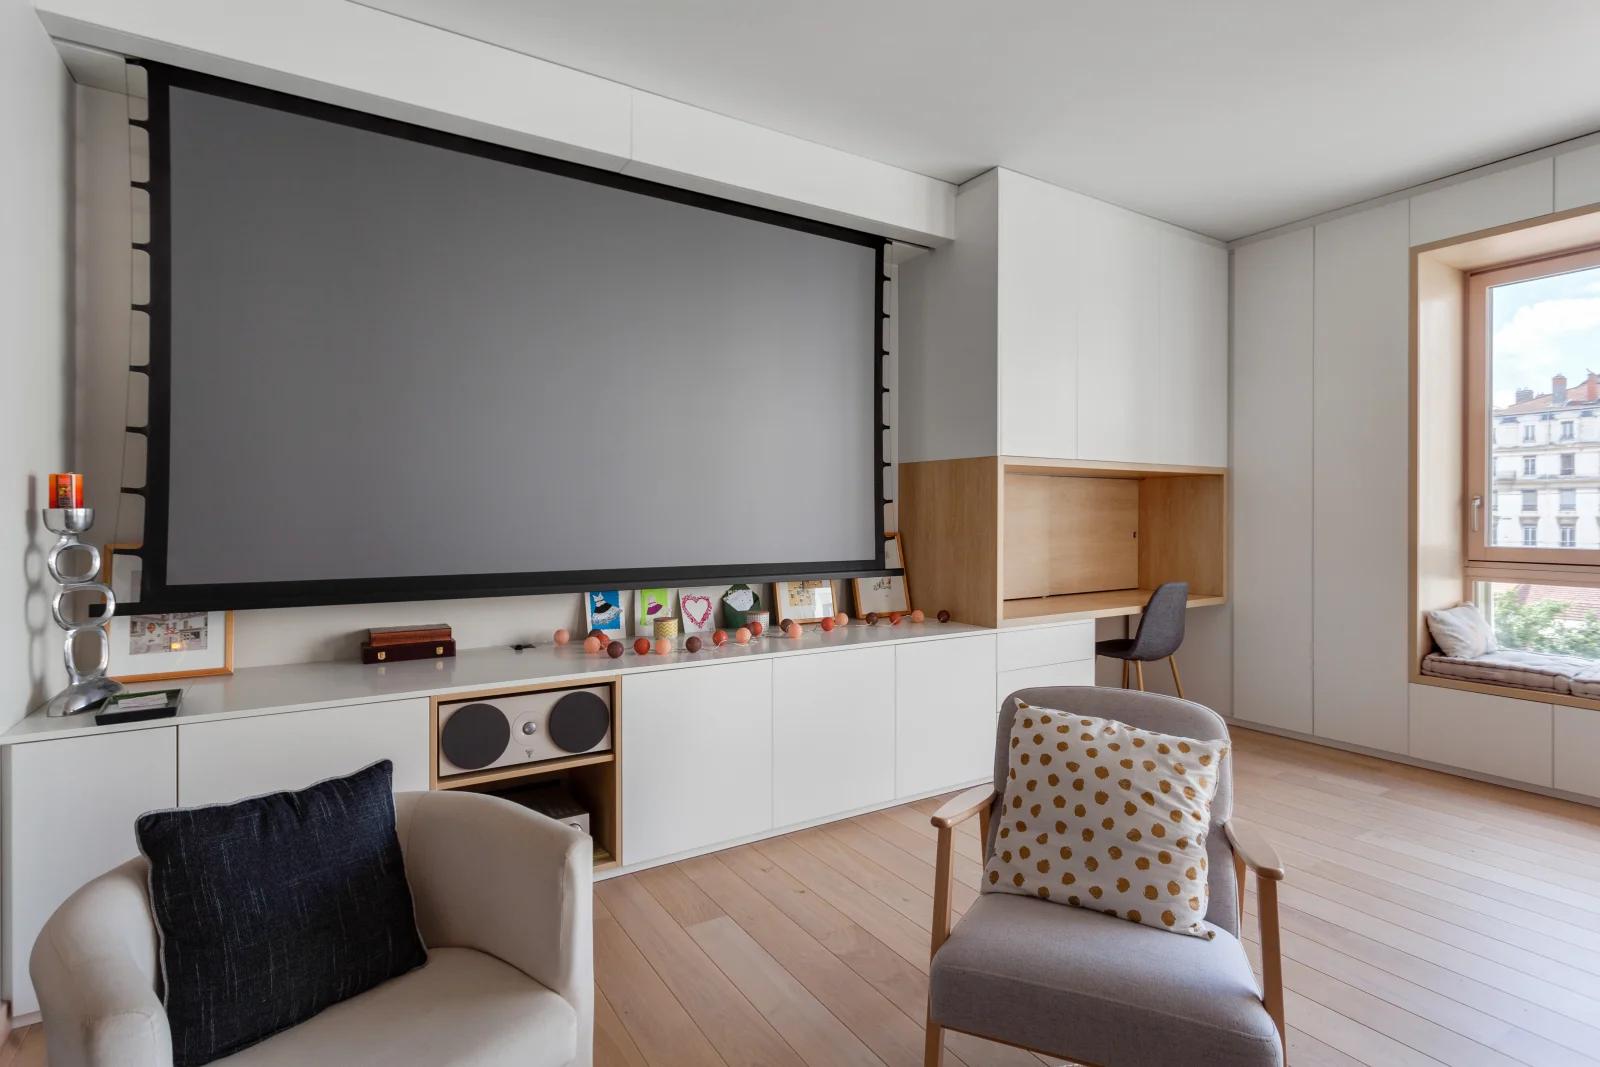 Living room in Appart. design bay window video-proj terrace - 1